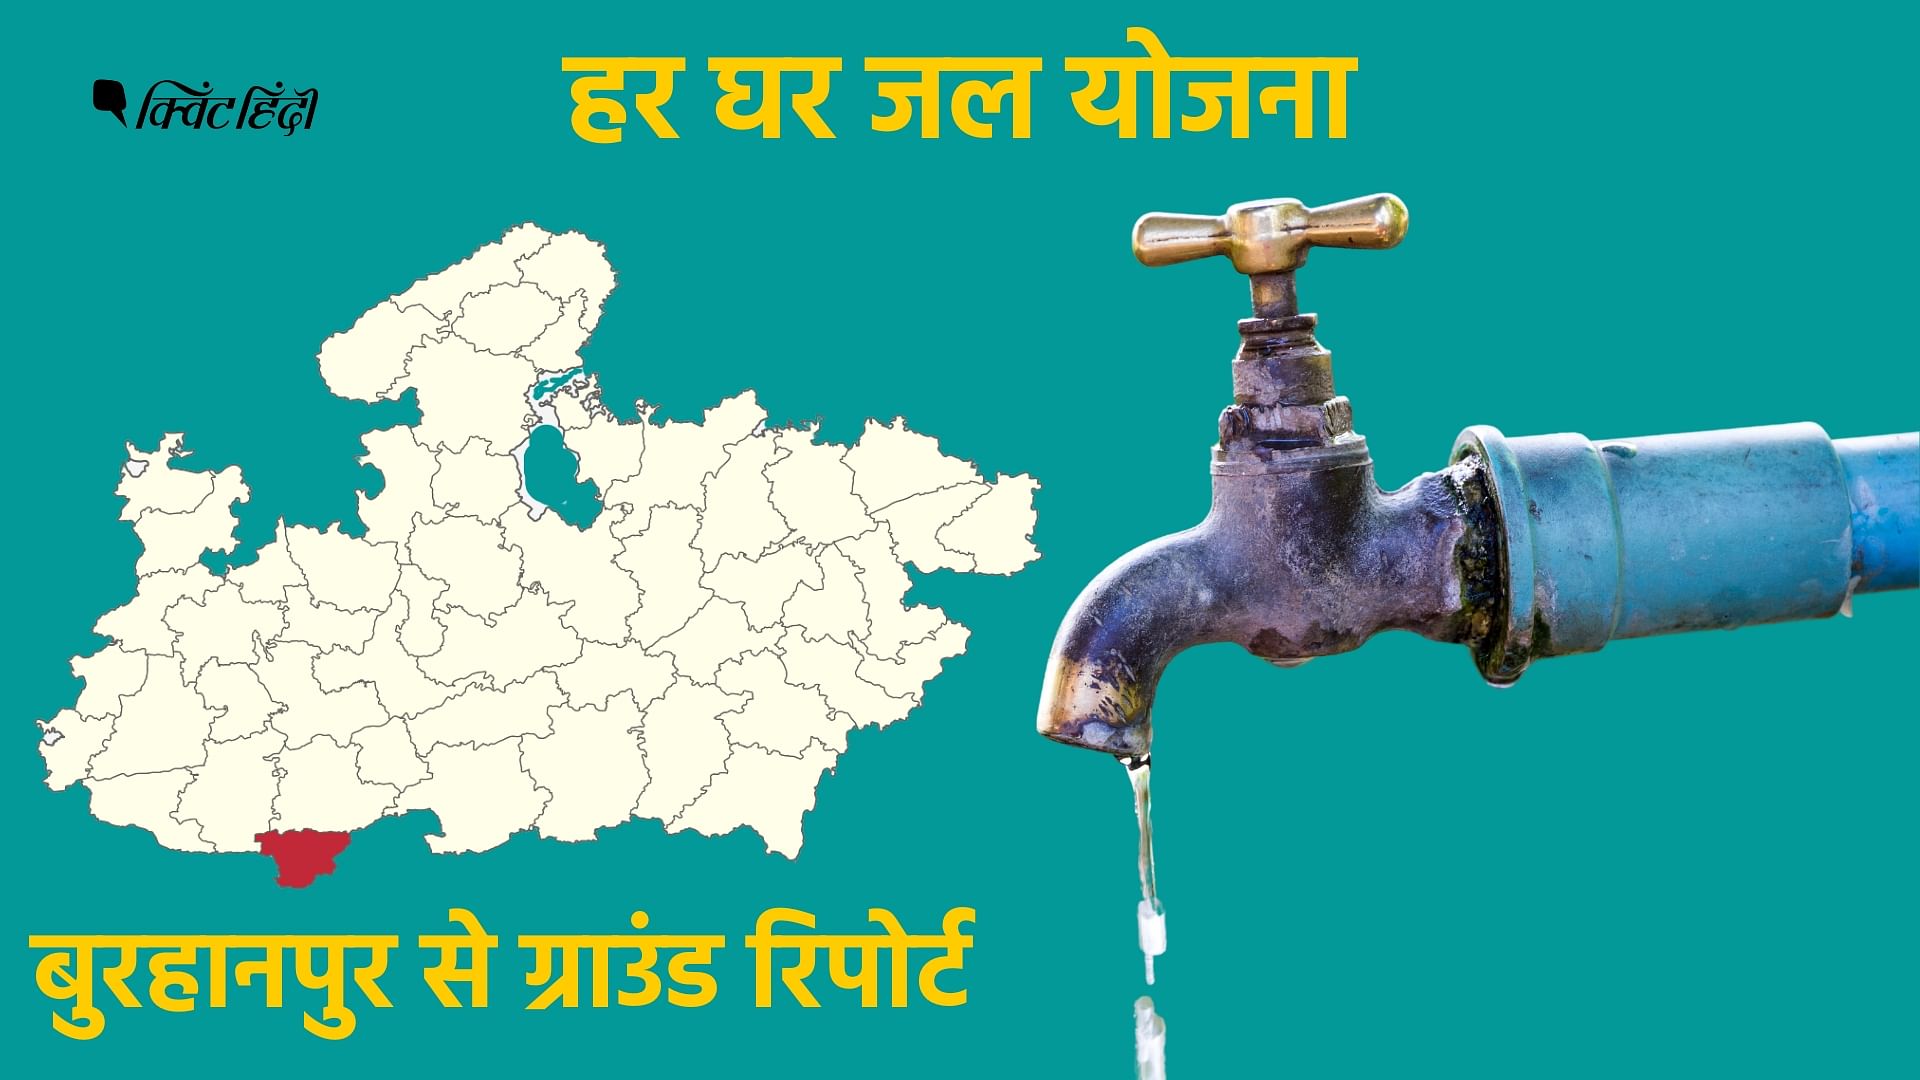 <div class="paragraphs"><p>MP:बुरहानपुर देश का पहला 'हर घर जल' प्रमाणित जिला,पर नहीं बुझ रही लोगों की प्यास</p></div>